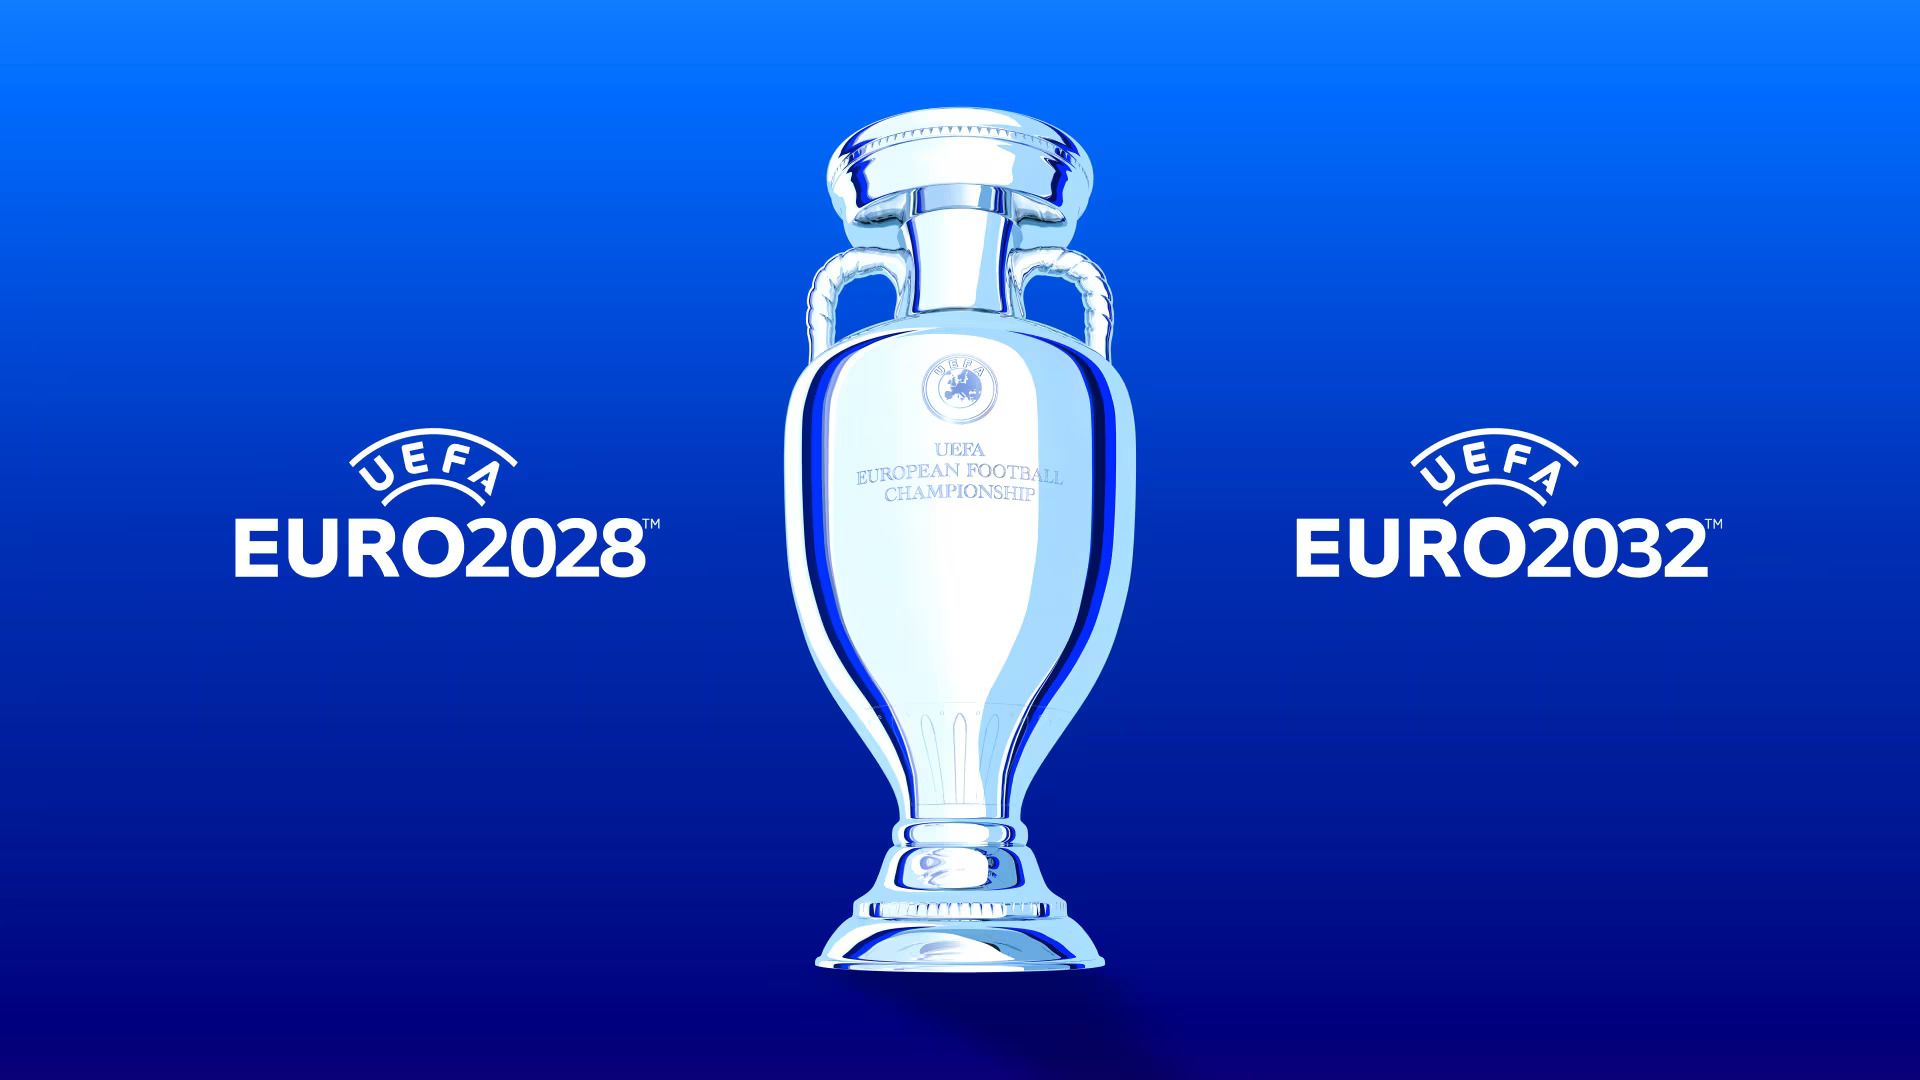 Кто примет Евро-2028 и Евро-2032